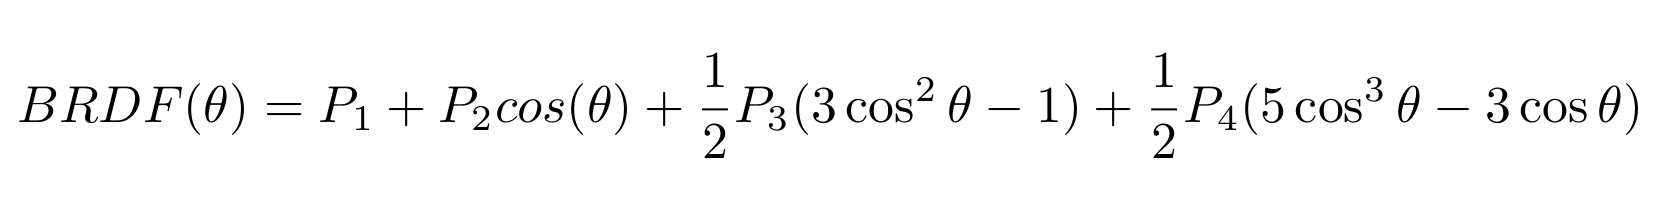 BRDF-equation